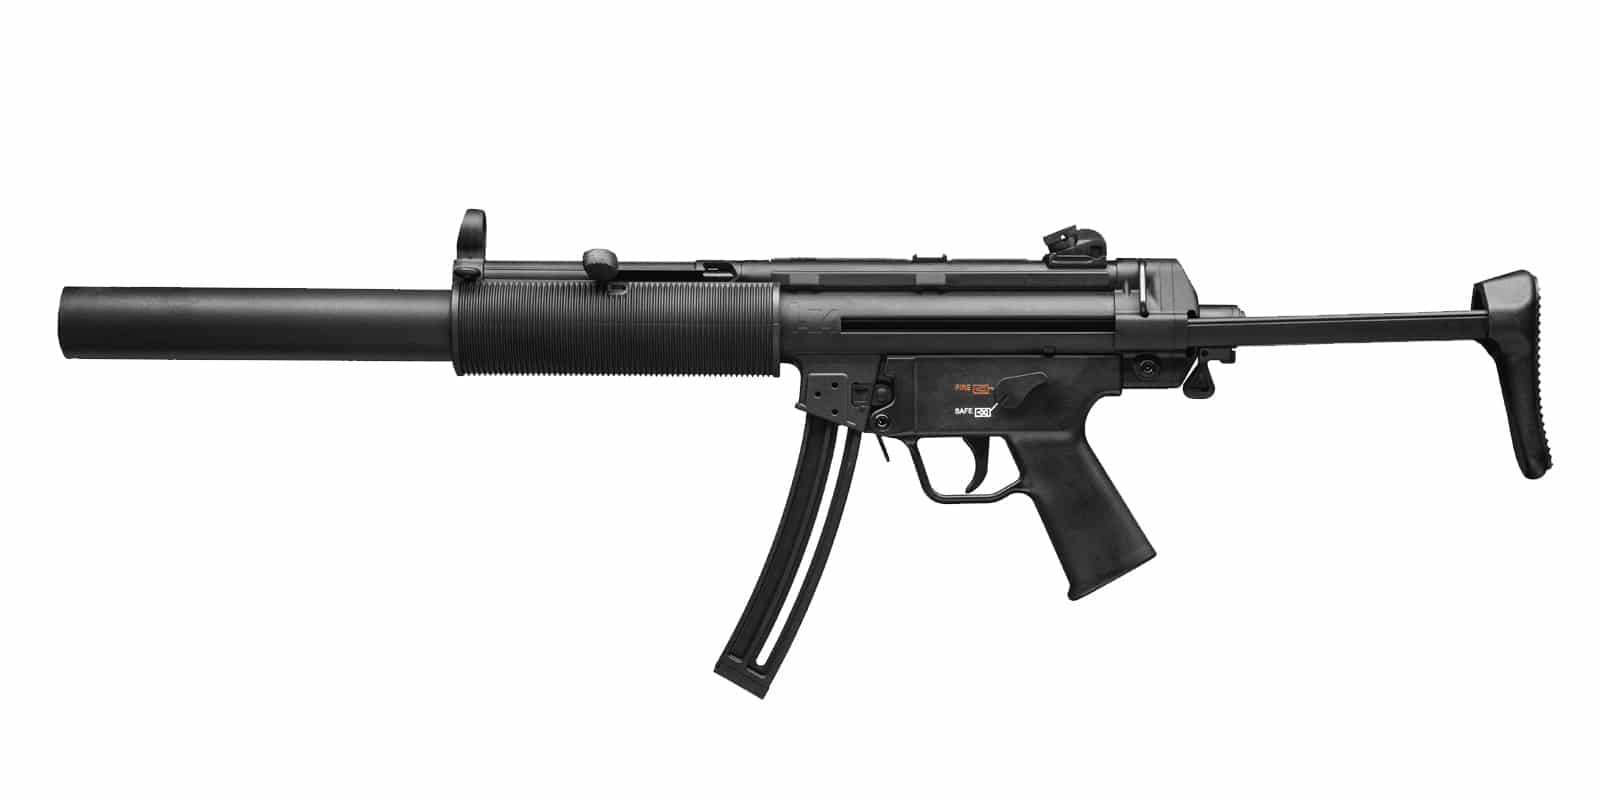 handk mp5 submachine gun